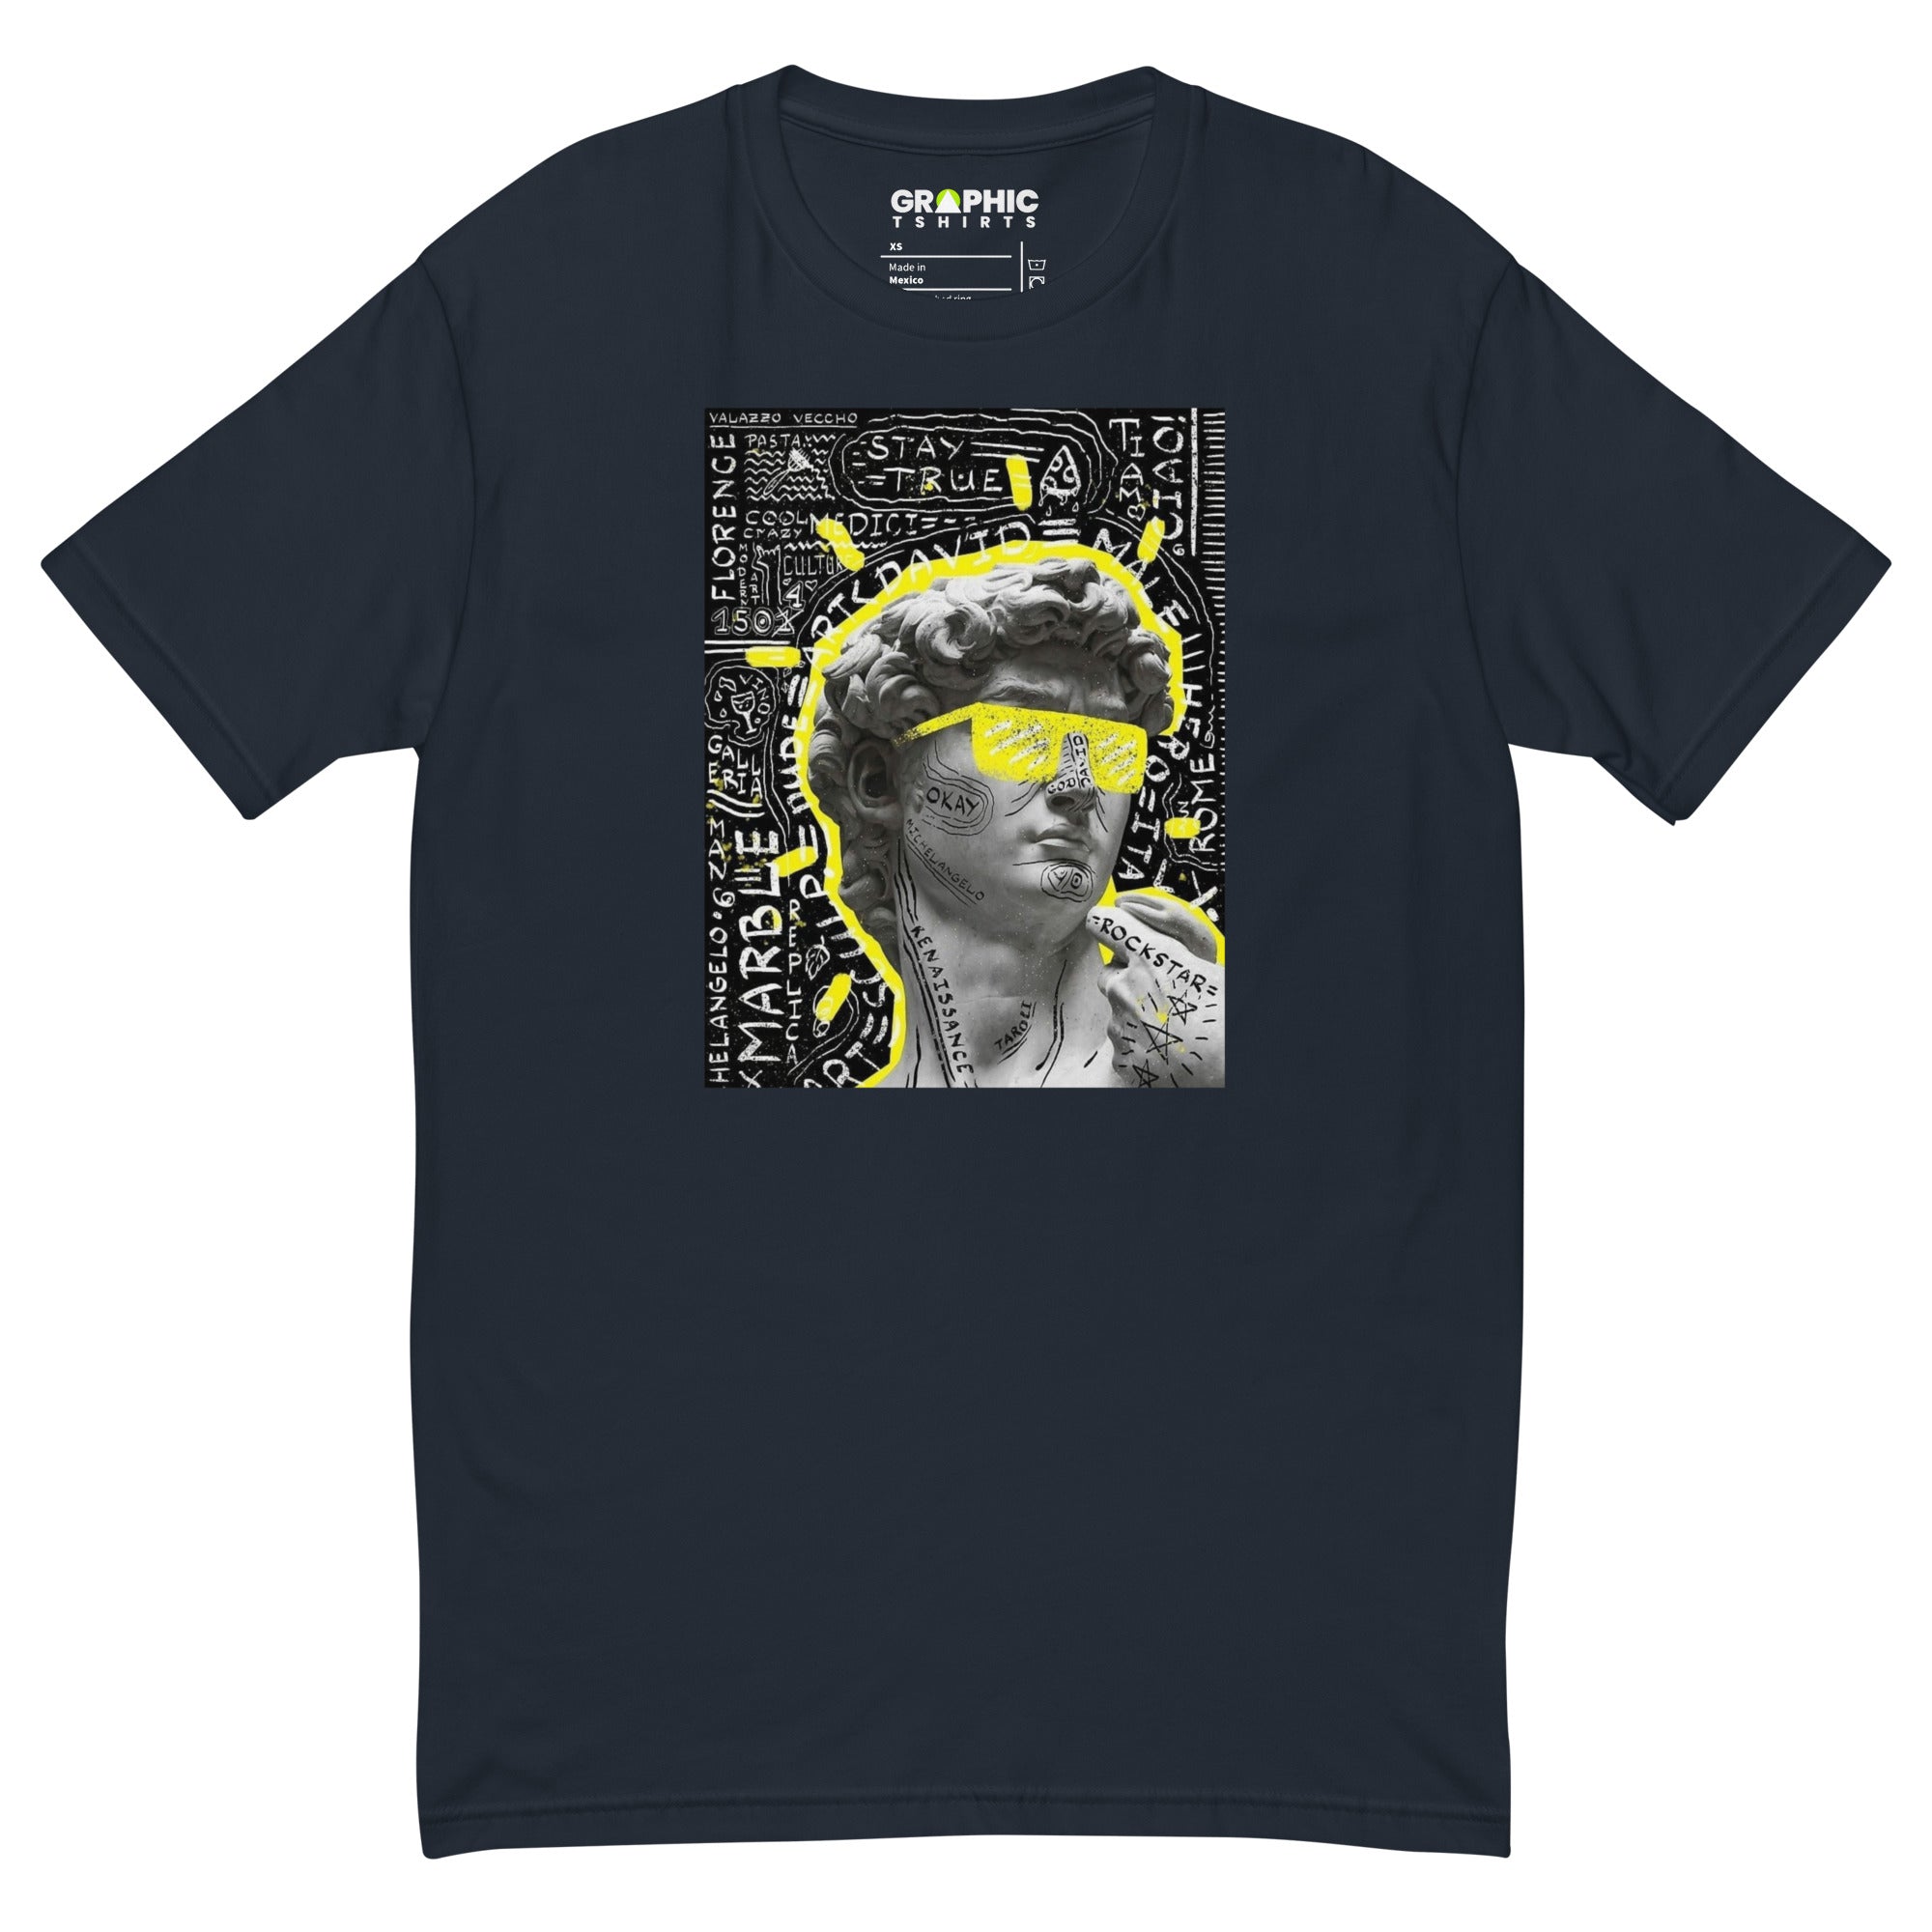 Unisex Crew Neck T-shirt - Intelligence - GRAPHIC T-SHIRTS